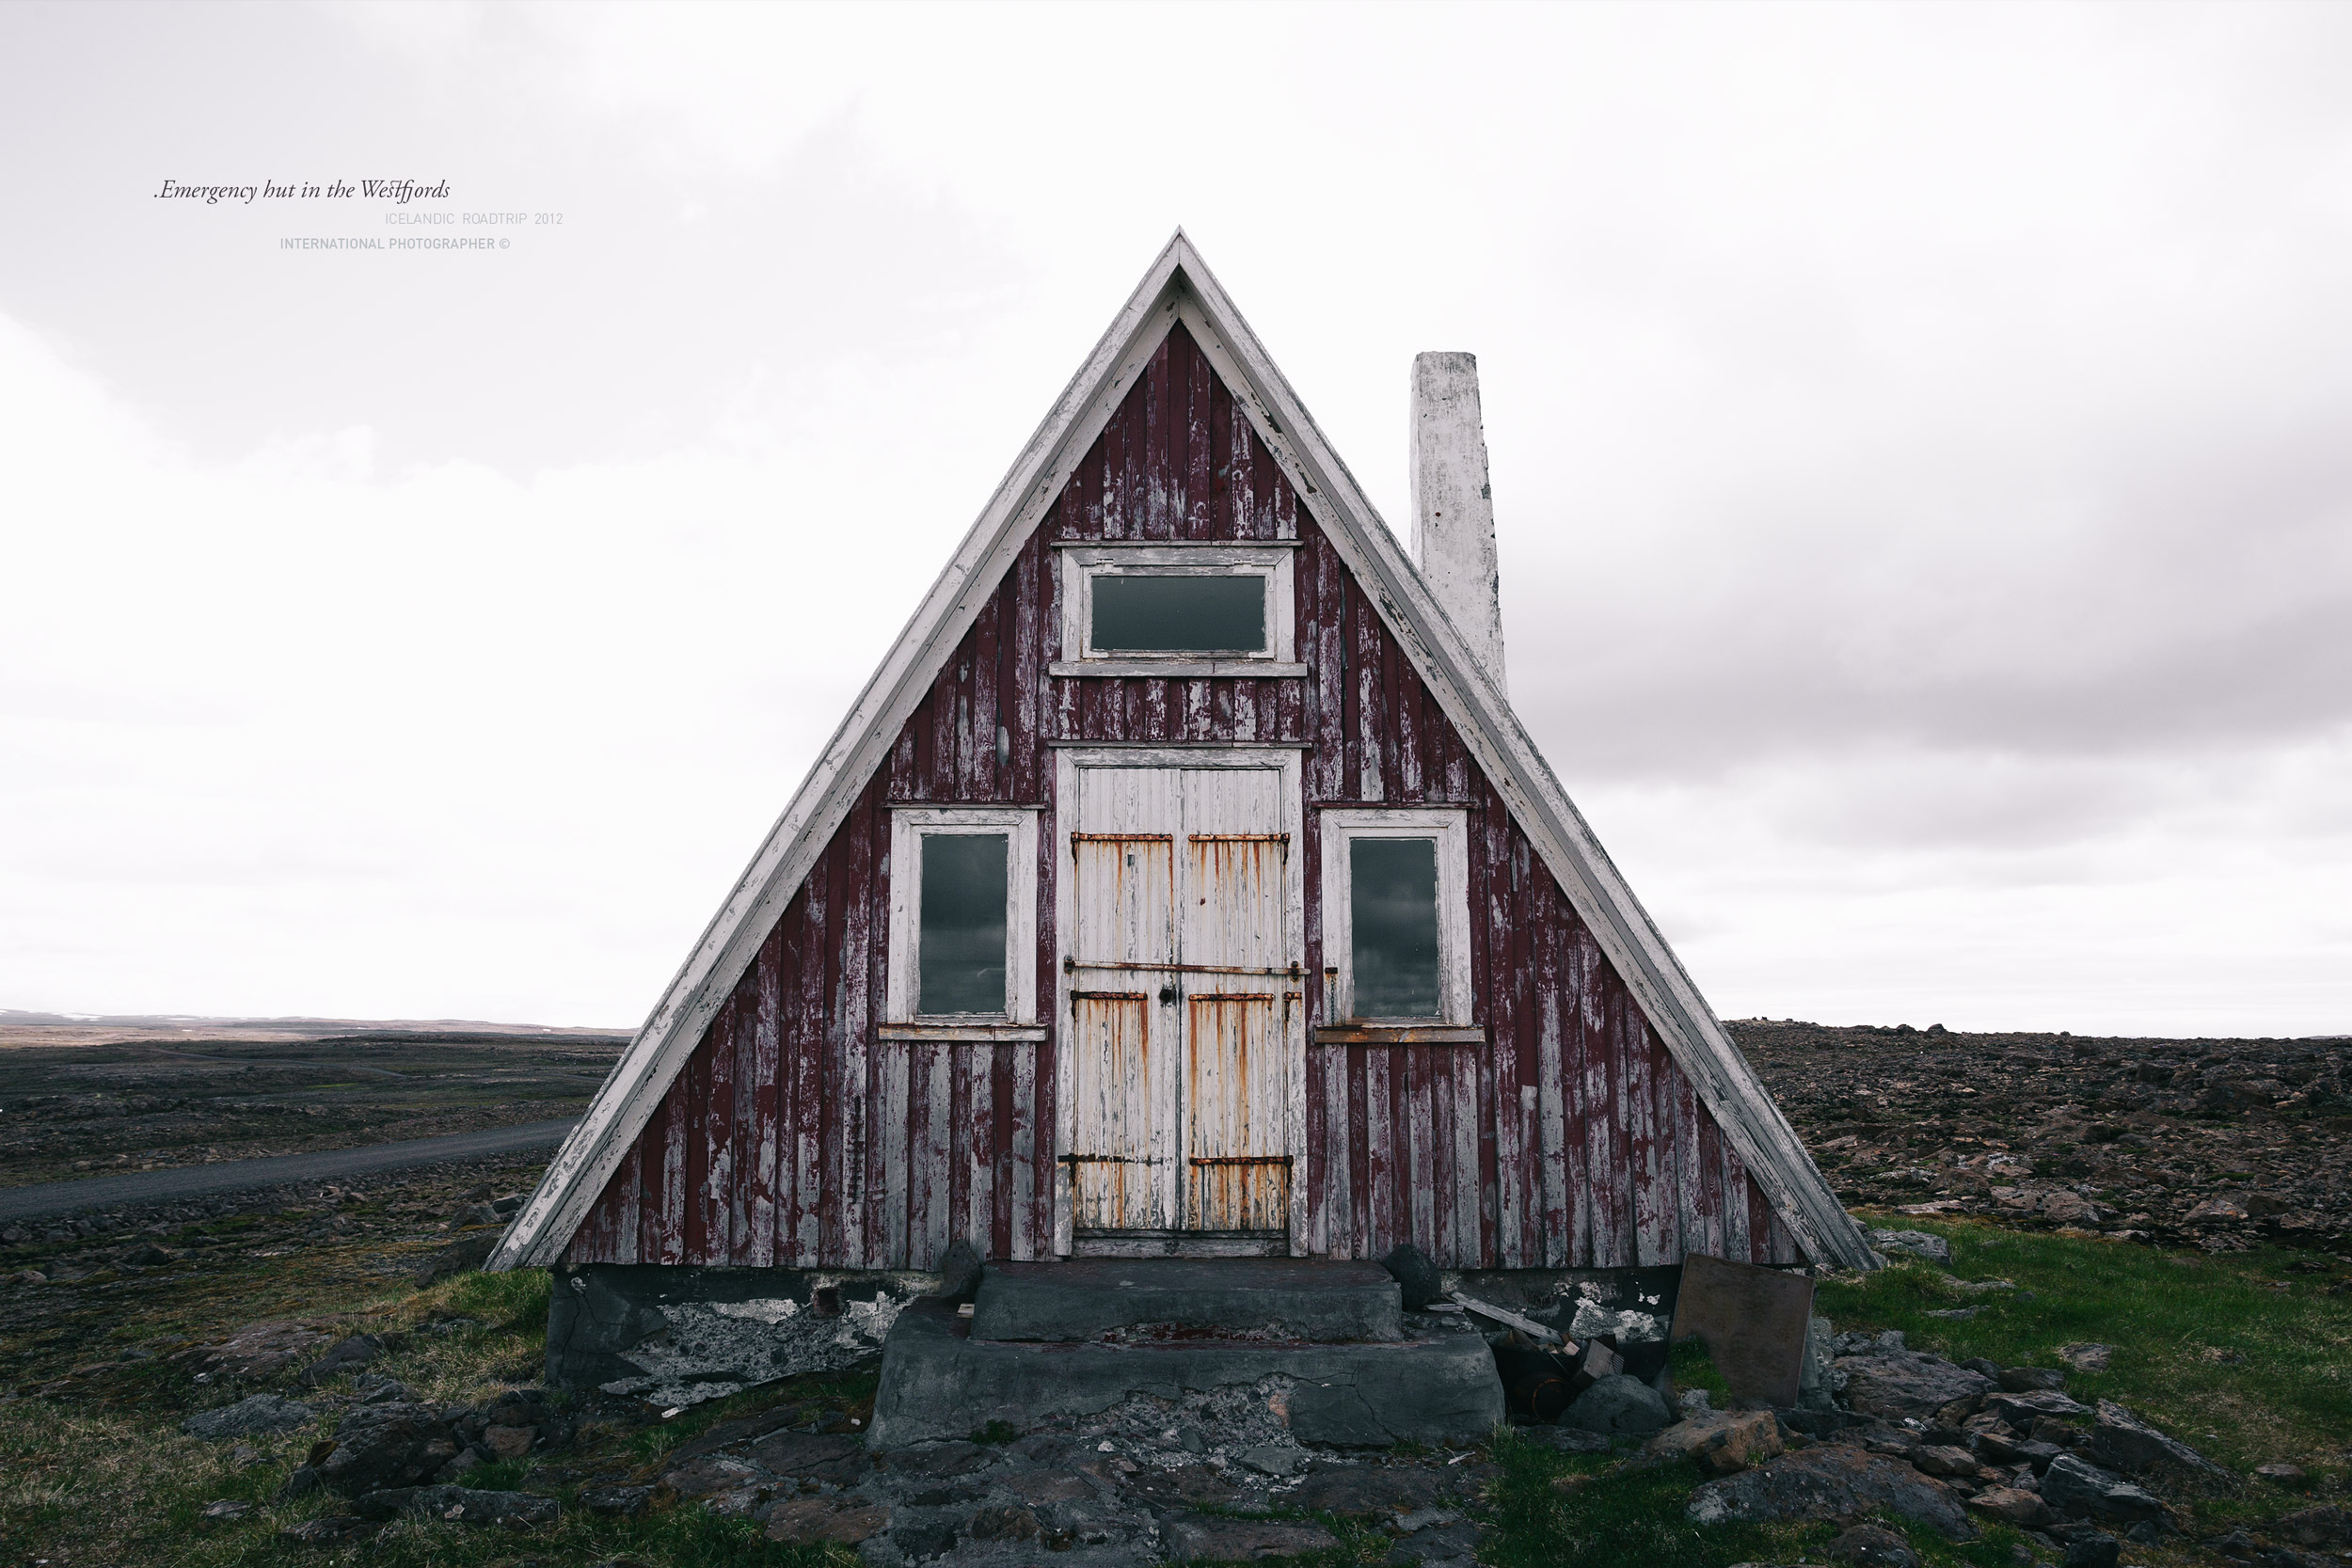 2012 ICELAND westfjords emergency hut wood